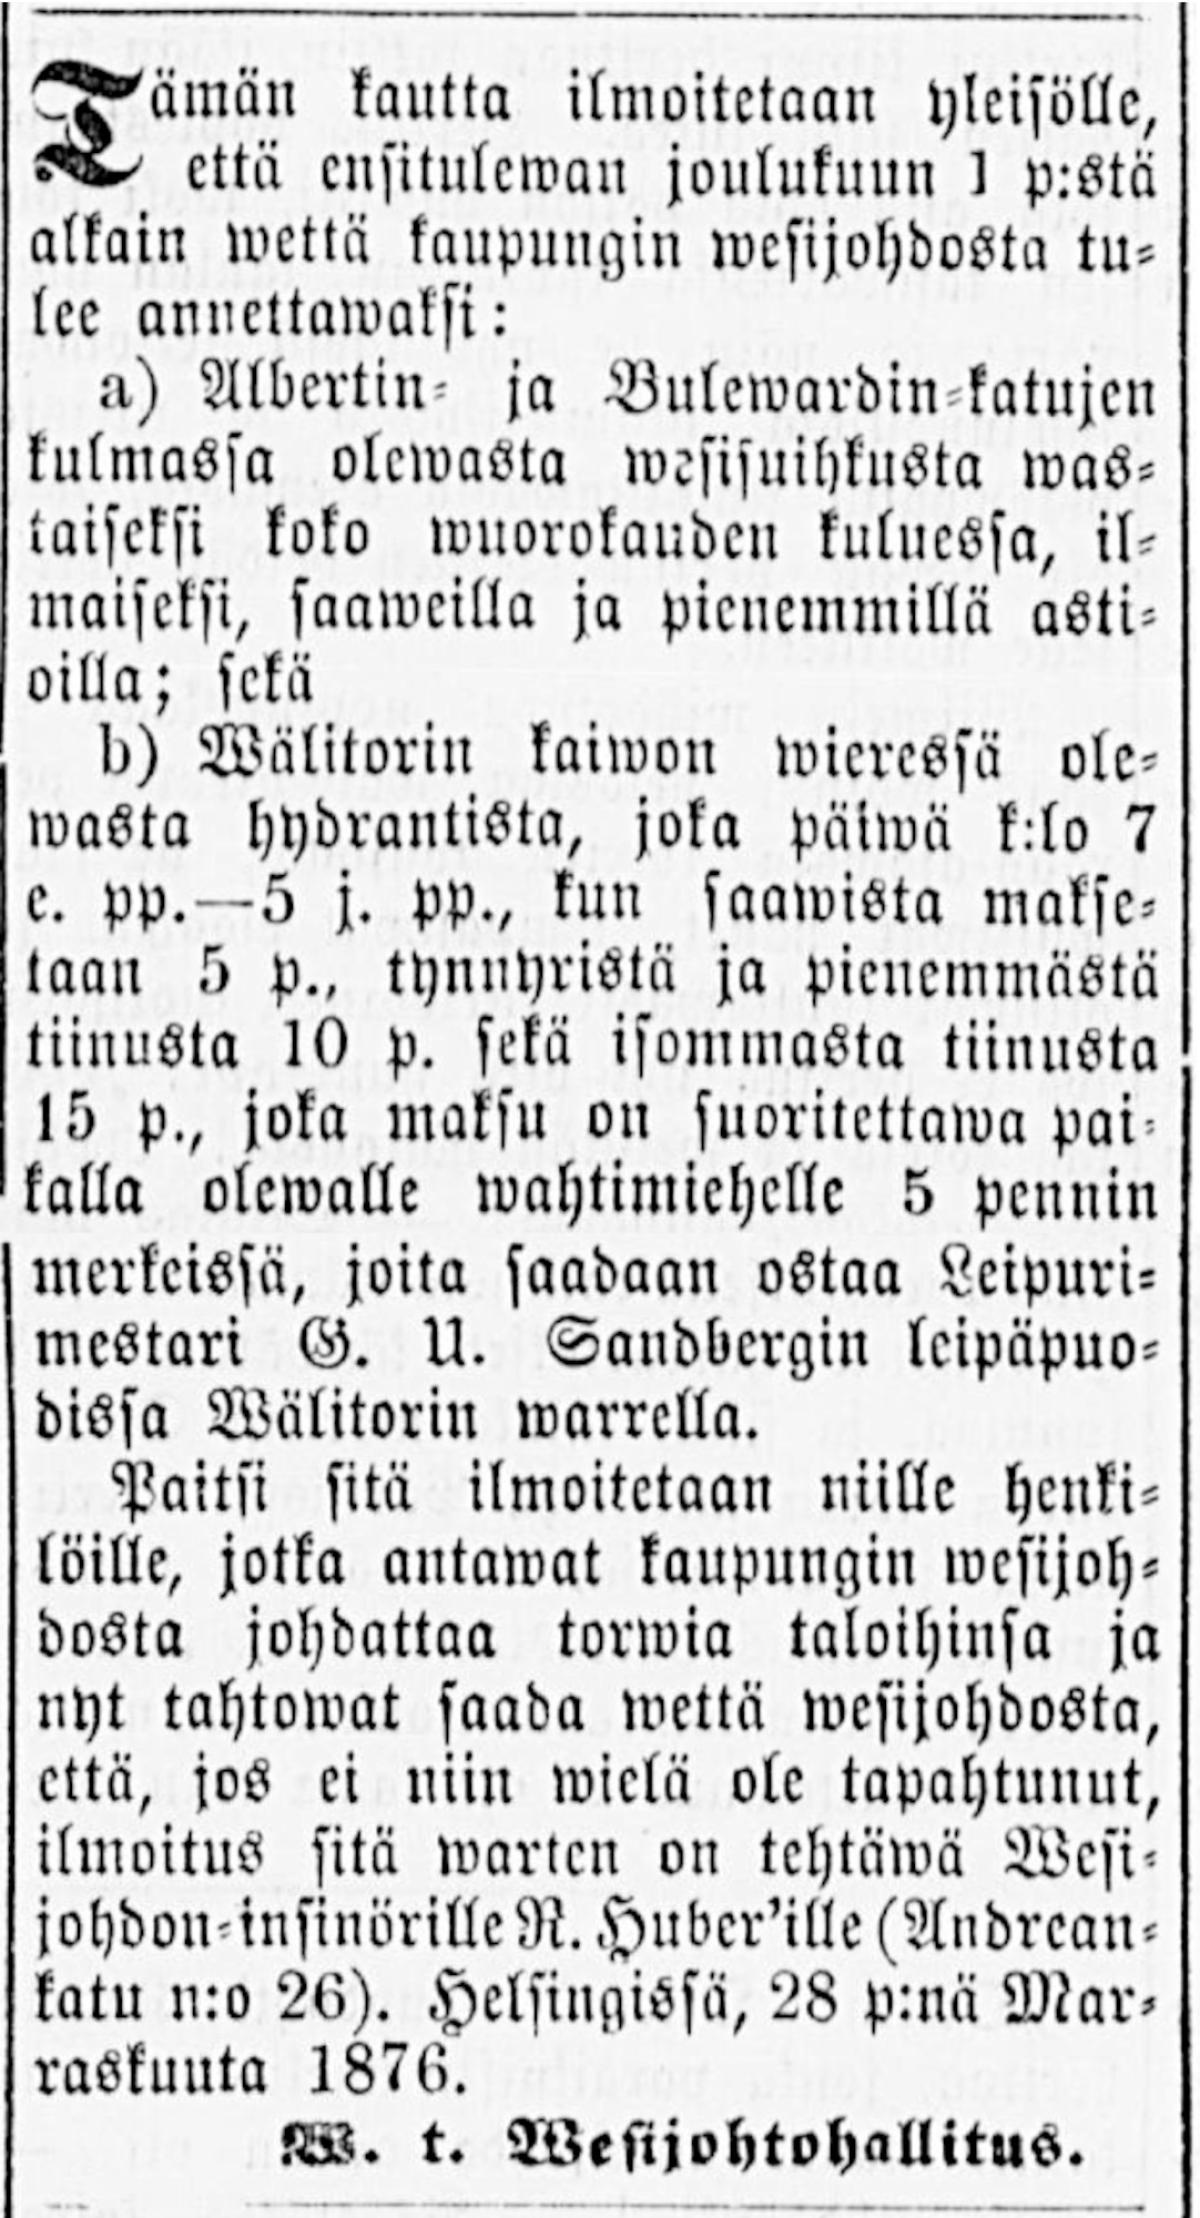 Ote Uusi Suometar -sanomalehden kirjoituksesta, jossa kerrotaan alkaneesta vedenjakelusta joulukuussa 1876.